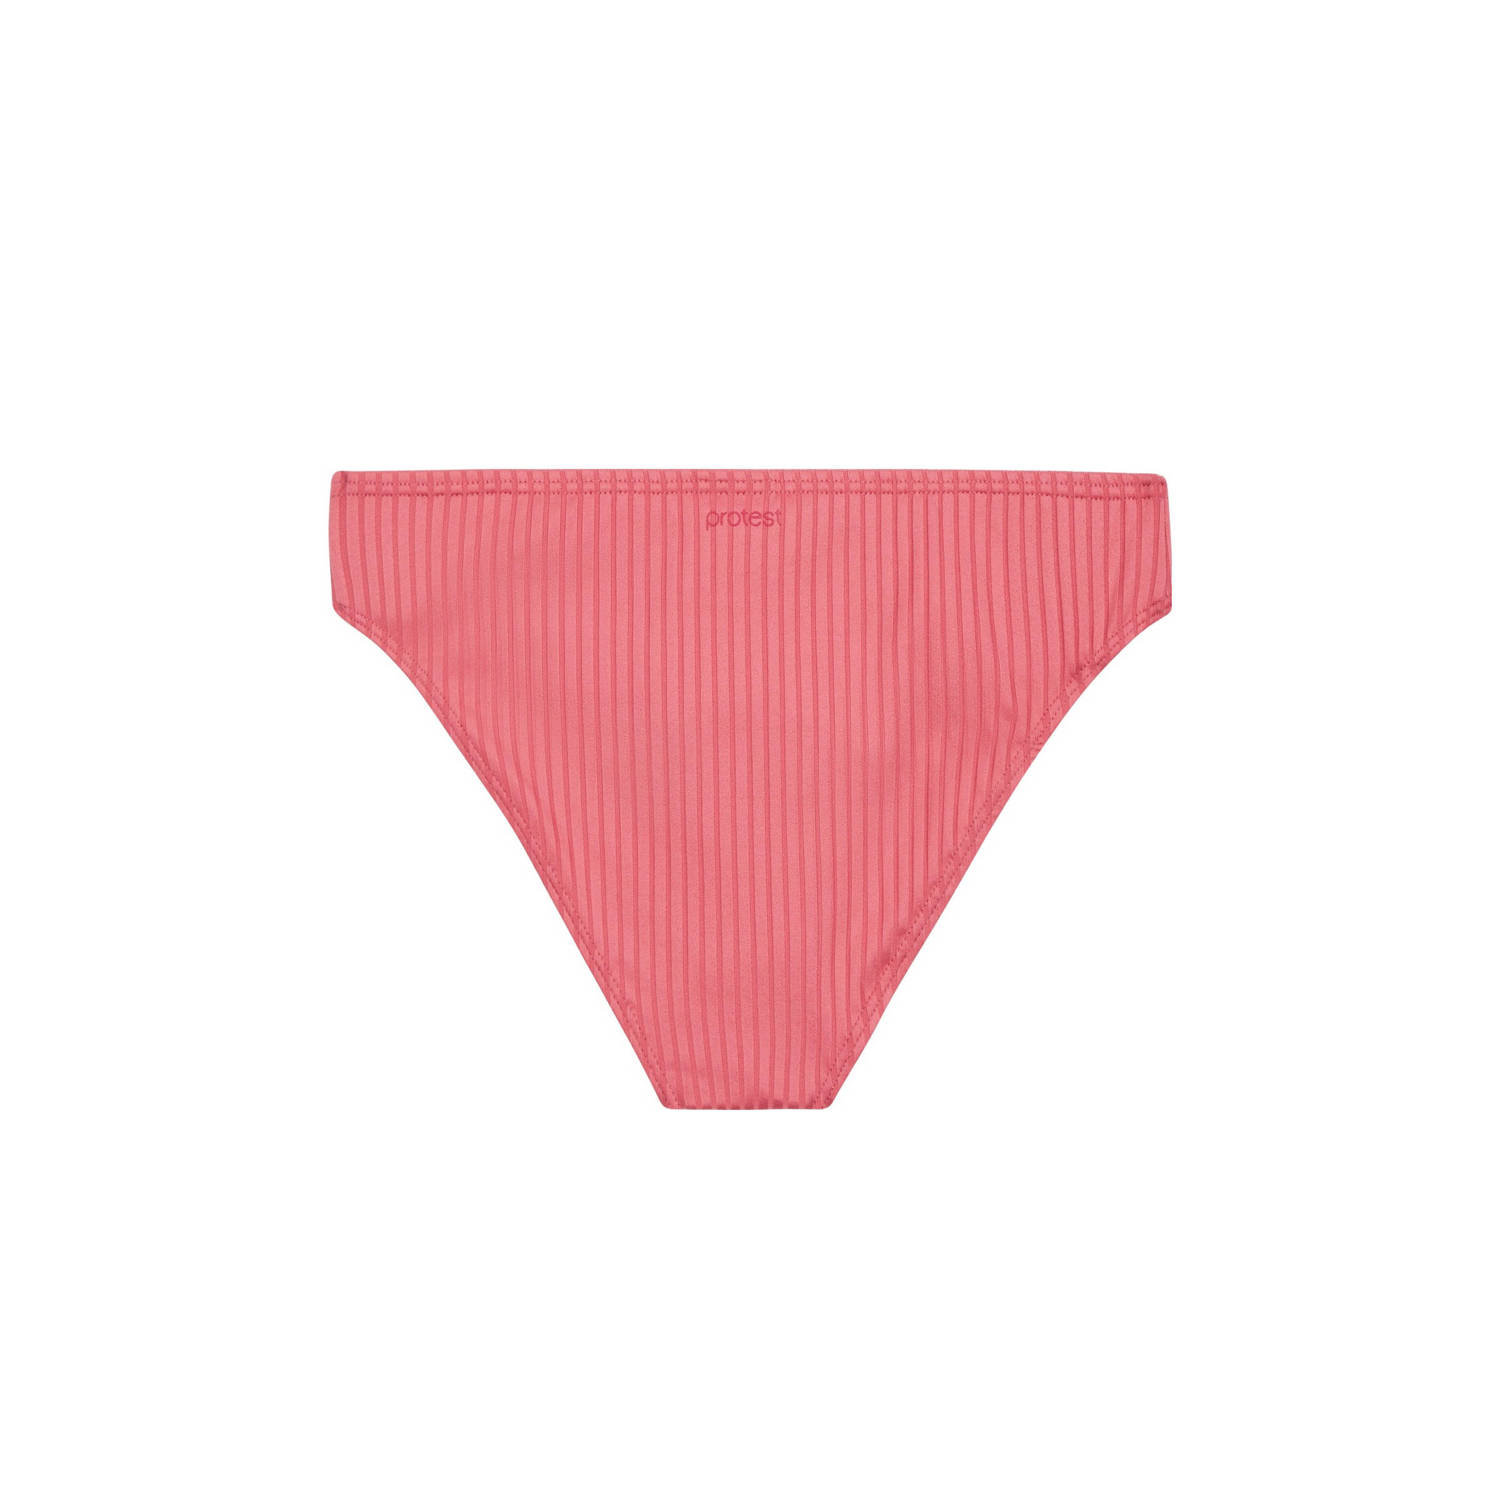 Protest bikinibroekje MIXNEVIS met ribstructuur roze